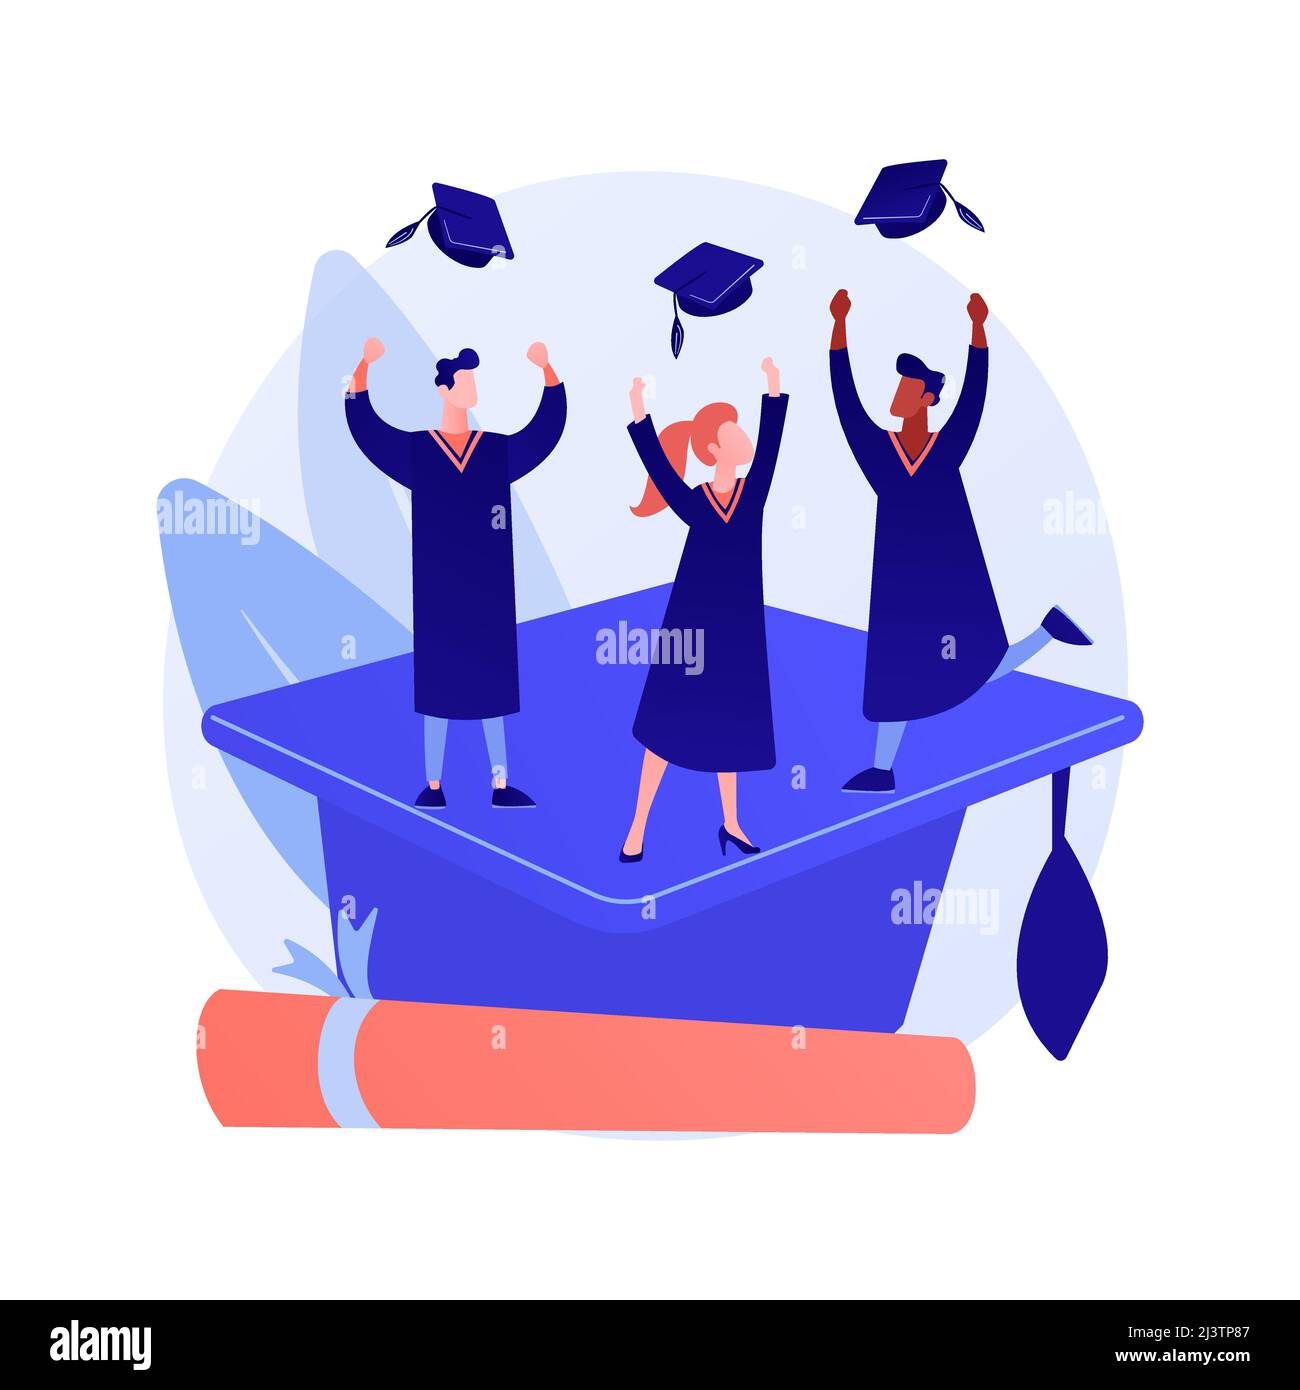 Master-Abschluss. Hochschulbildung, Wissensgewinnung, Hochschulabschluss. Bachelor Cap und College-Zertifikat auf weißem Hintergrund. Vecto Stock Vektor